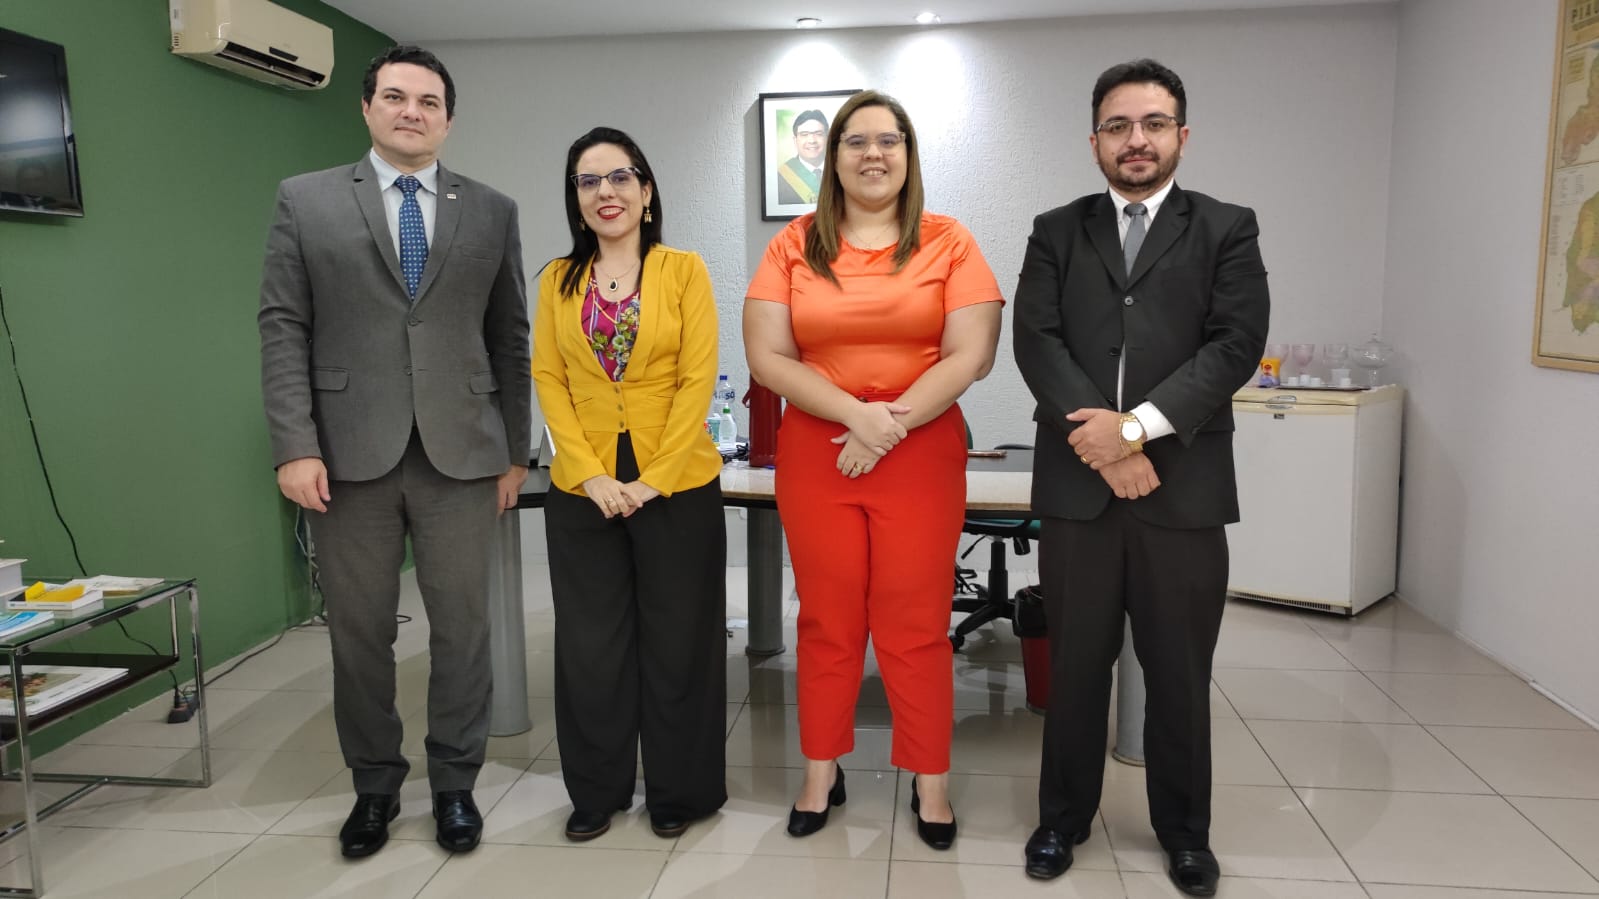 Comissão de Direito no Trânsito da Ordem dos Advogados do Brasil, Seccional Piauí